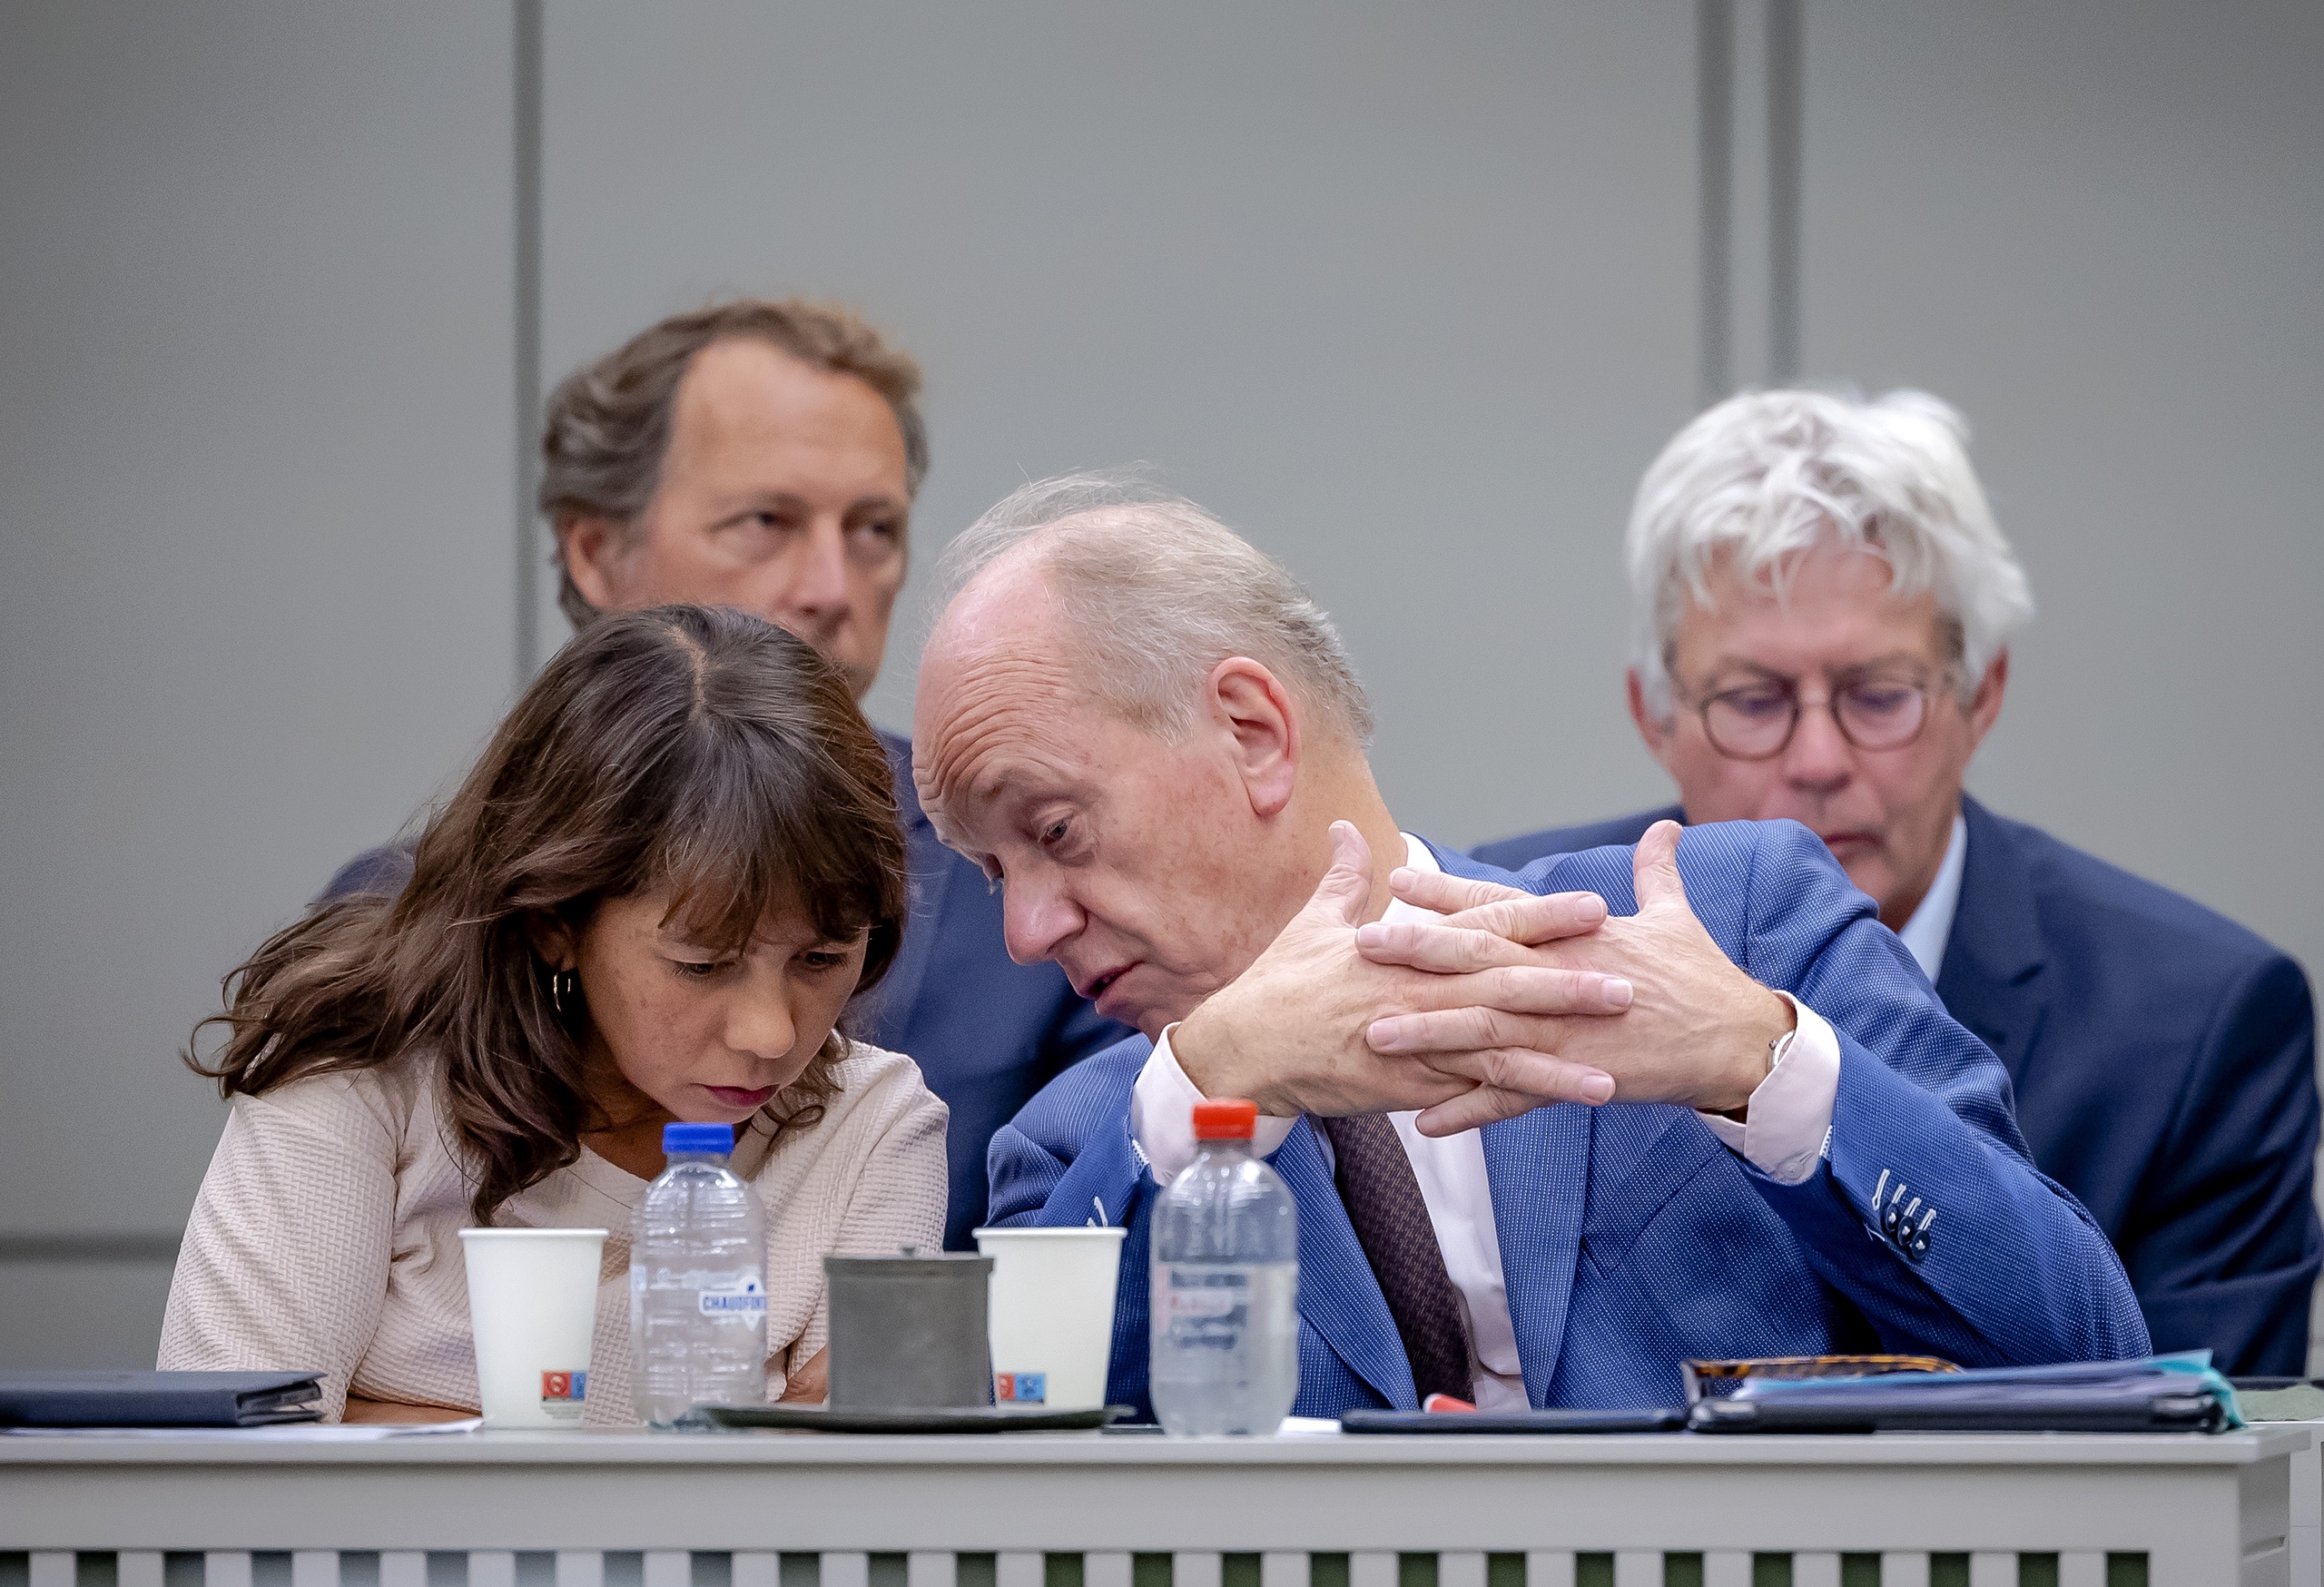 Mei Li Vos en Ruud Koole (PvdA)  in de Eerste Kamer tijdens een tweedaags debat over het omstreden handelsverdrag (Ceta) tussen Europa en Canada